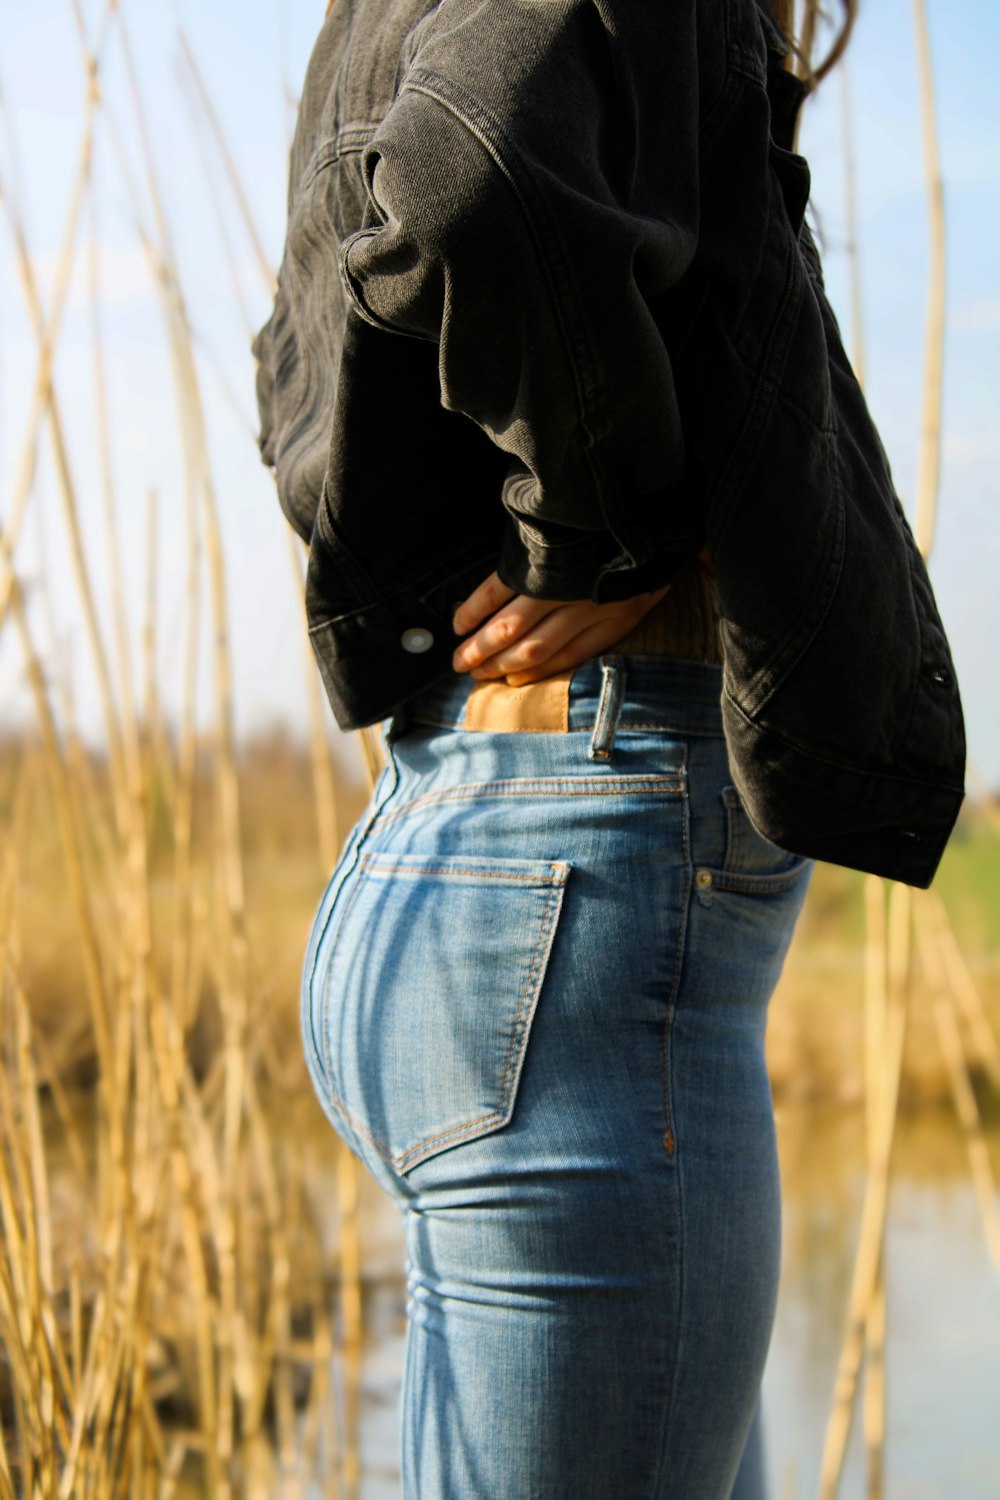 Persona con chaqueta negra y jeans de mezclilla azul de pie en el campo de hierba durante el día